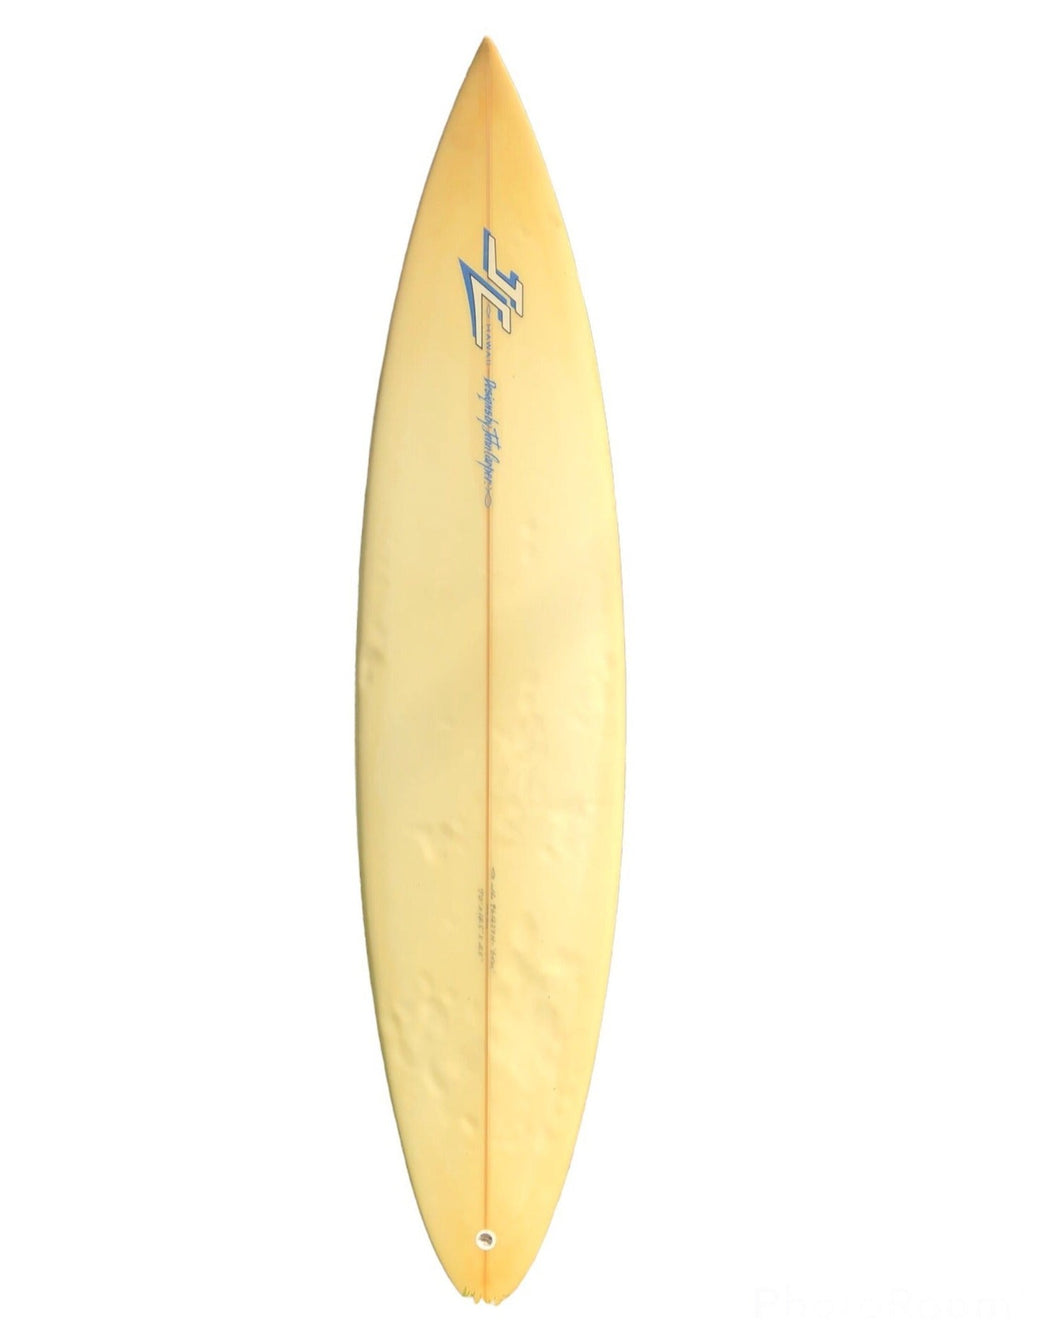 JC surfboard